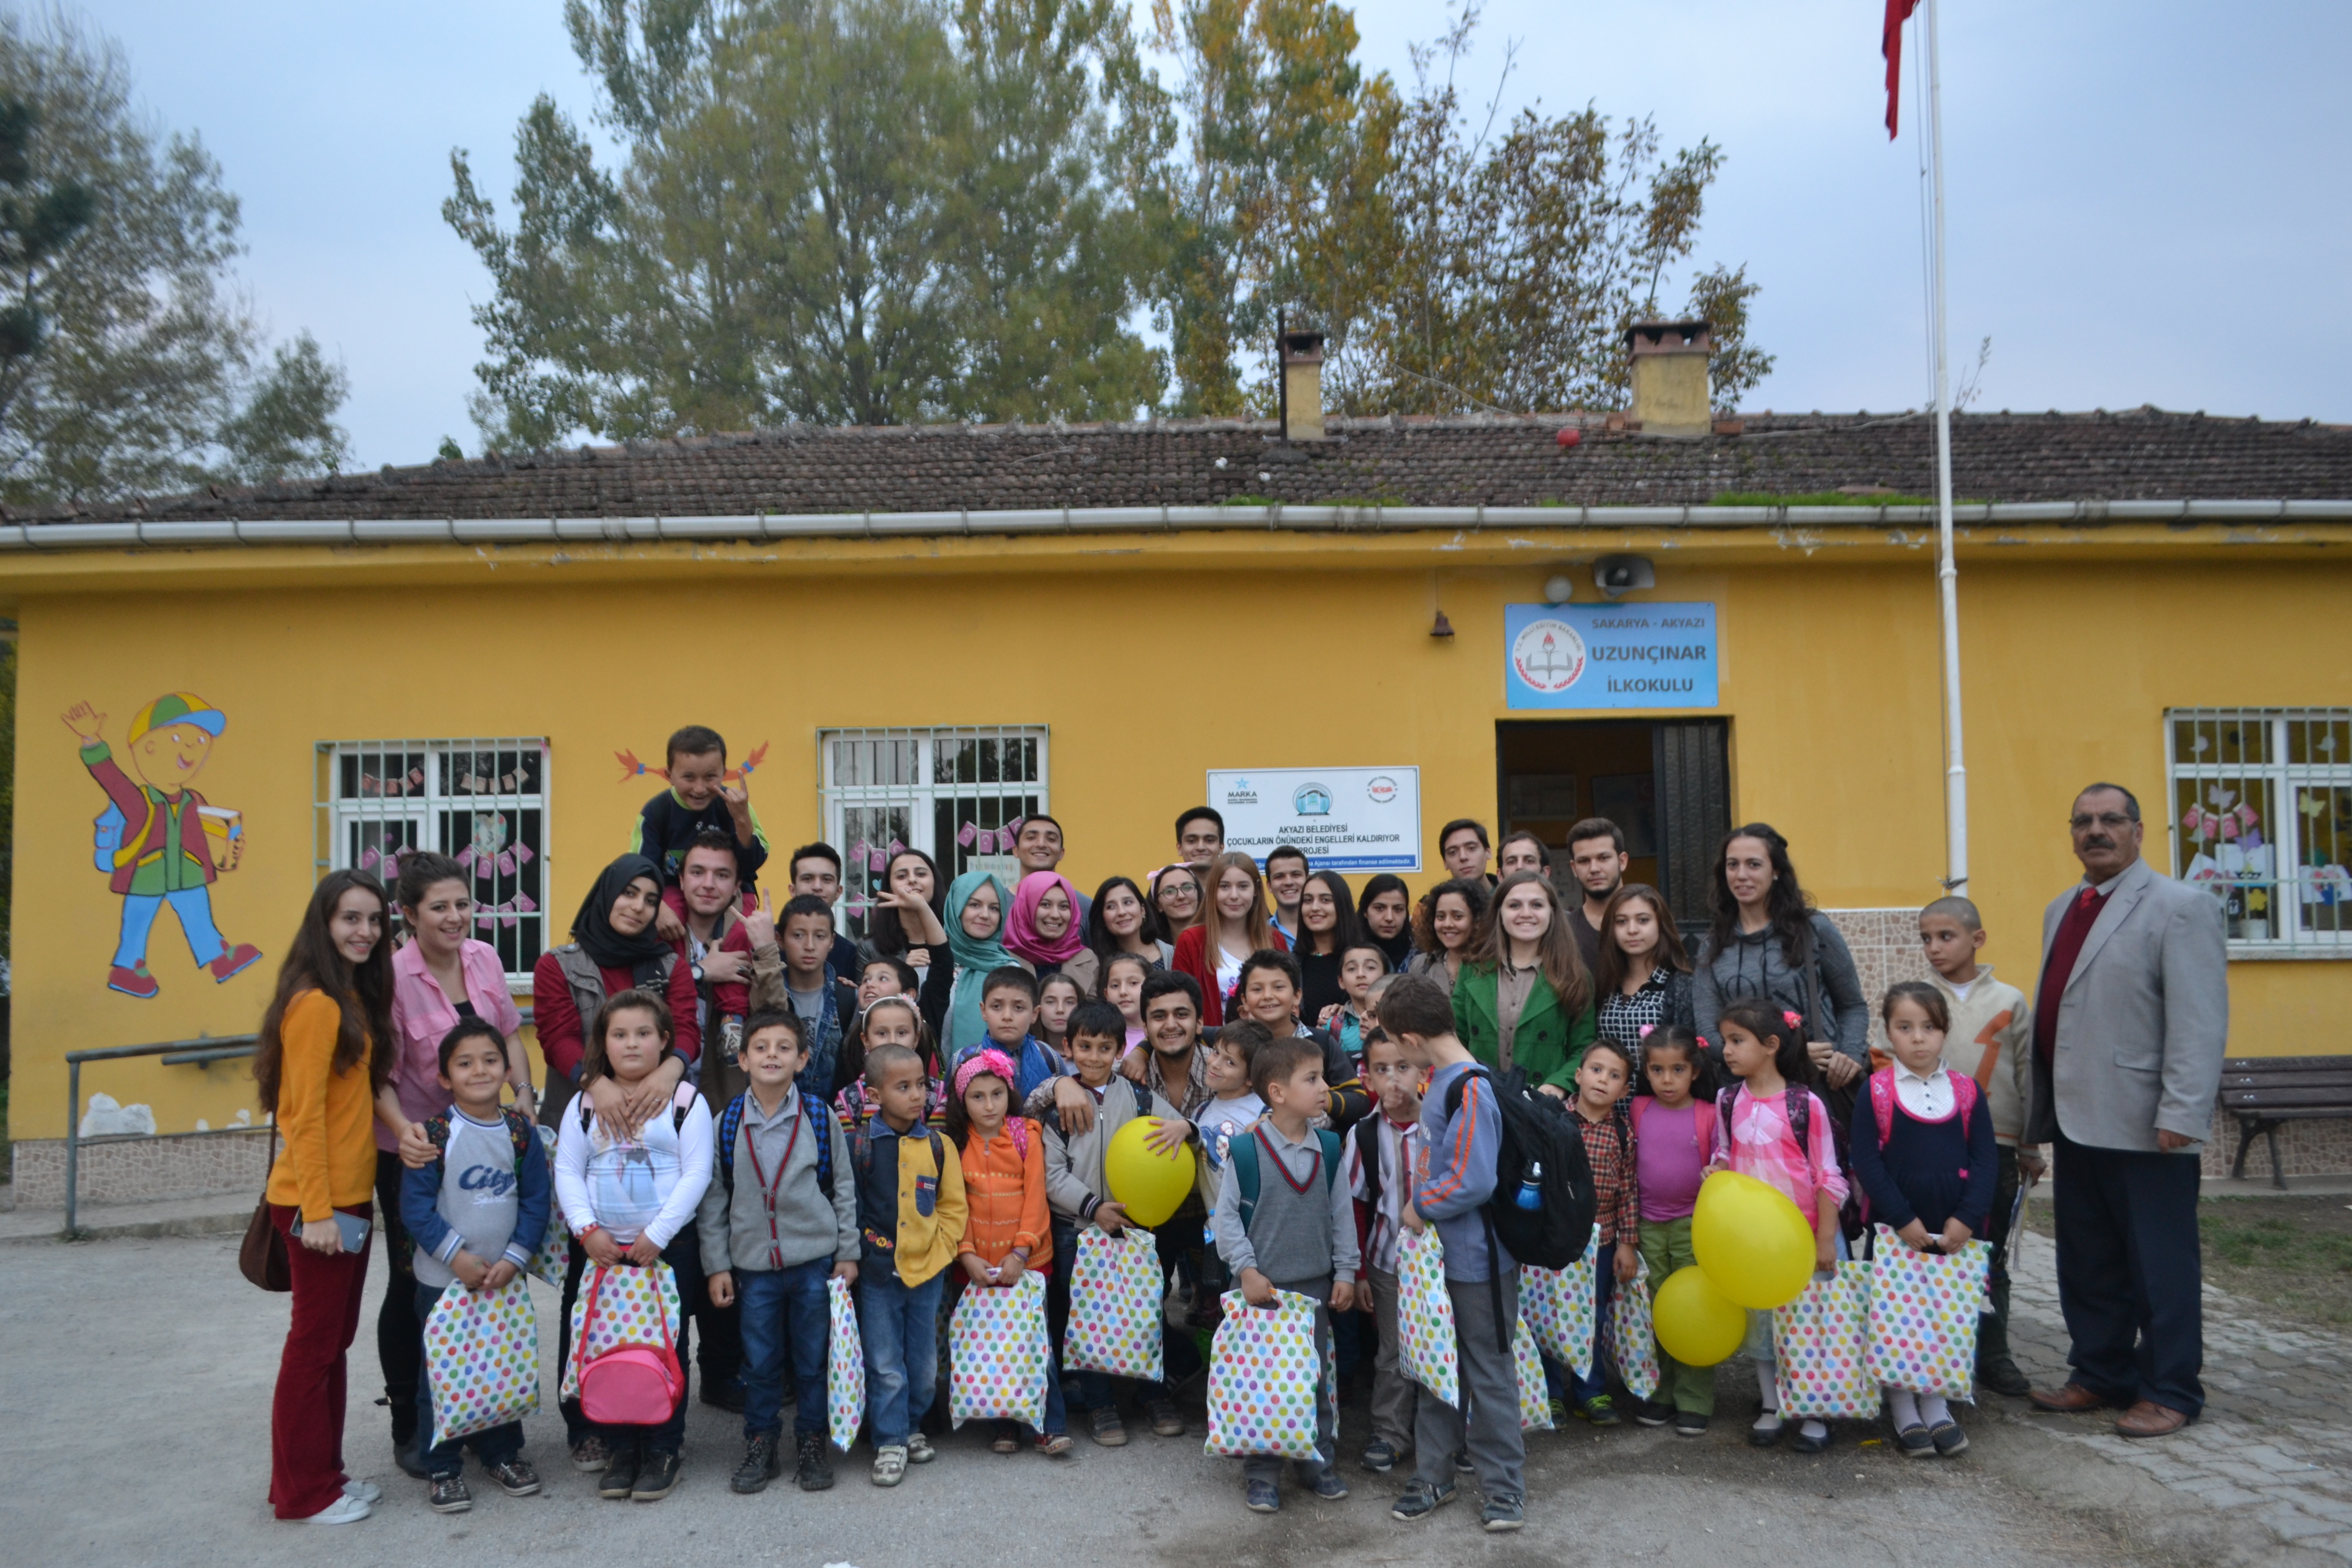 Sakarya Üniversitesi Çevre Köylere Yardım Topluluğu ile Röportaj